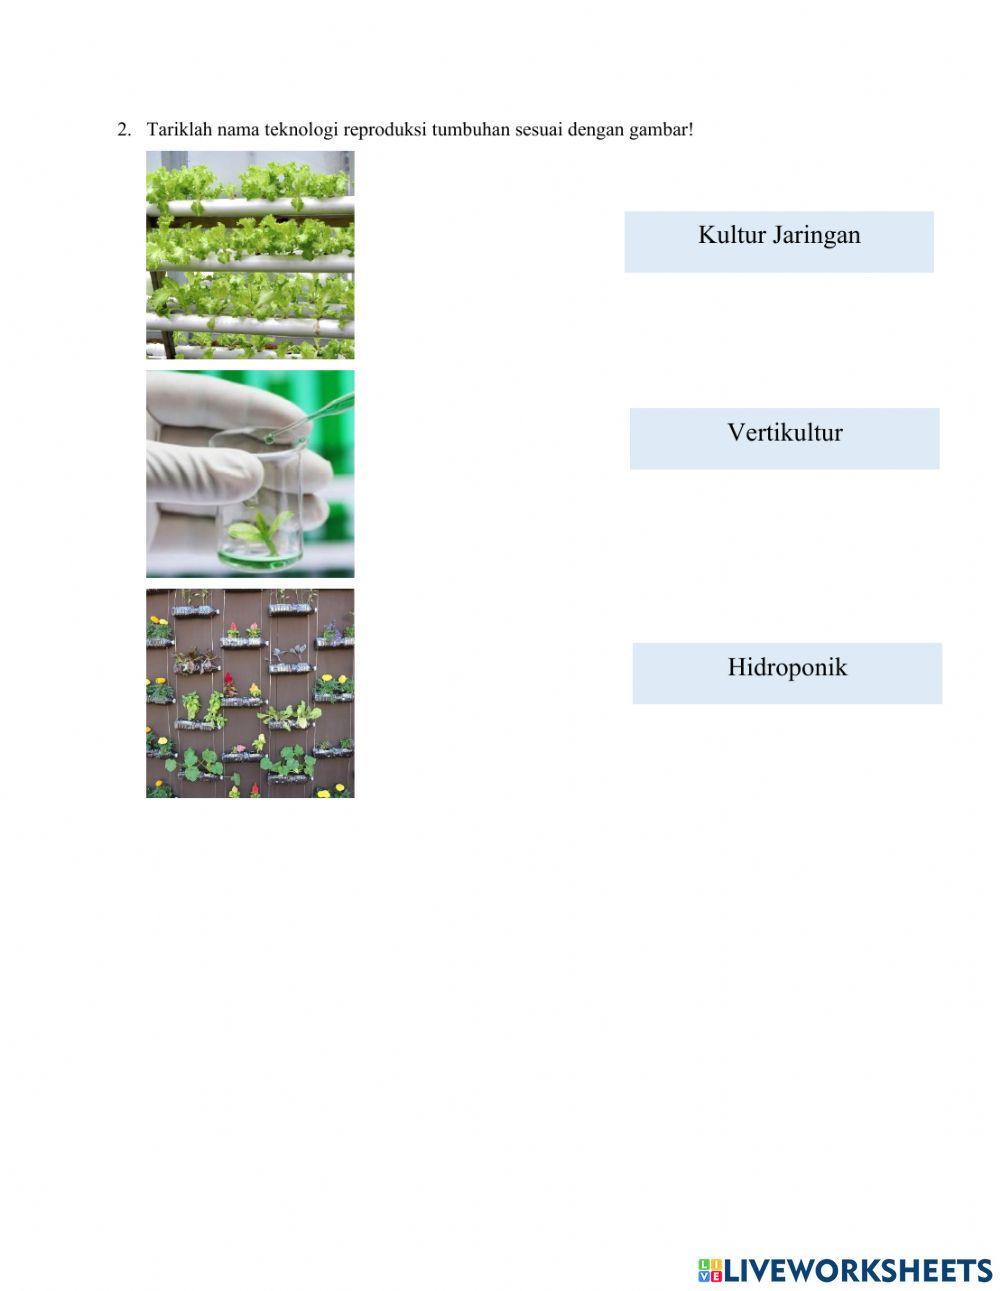 Tugas Pertemuan 9: Perkembangbiakan tumbuhan Gymnospermae dan Teknologi Perkembangbiakan Tumbuhan